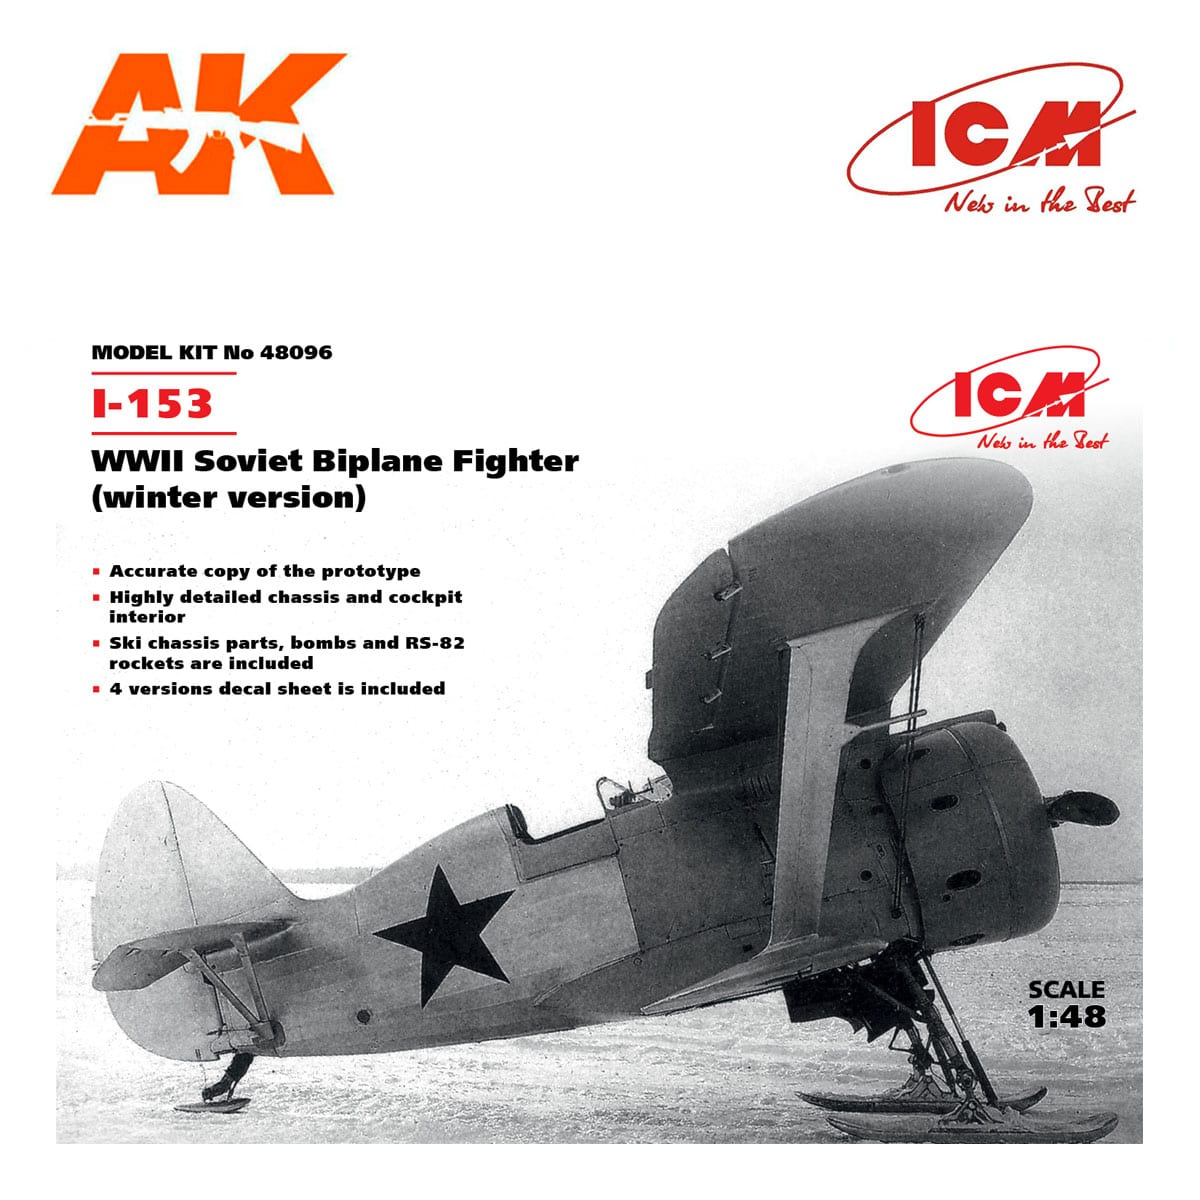 I-153, WWII Soviet Biplane Fighter (winter version) 1/48